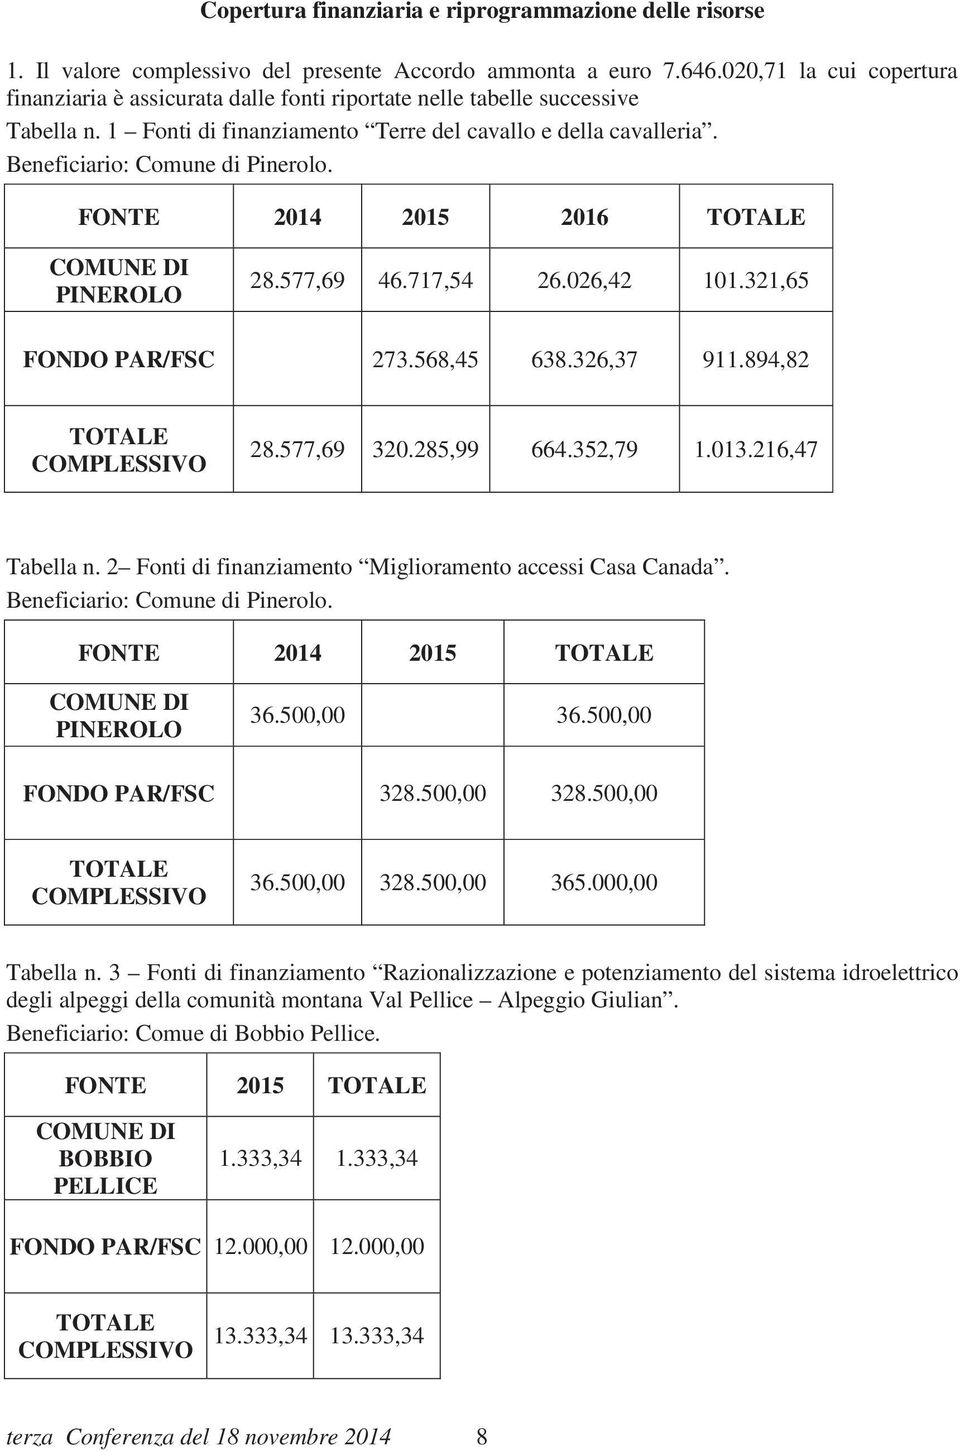 Beneficiario: Comune di Pinerolo. FONTE 2014 2015 2016 TOTALE COMUNE DI PINEROLO 28.577,69 46.717,54 26.026,42 101.321,65 FONDO PAR/FSC 273.568,45 638.326,37 911.894,82 TOTALE COMPLESSIVO 28.